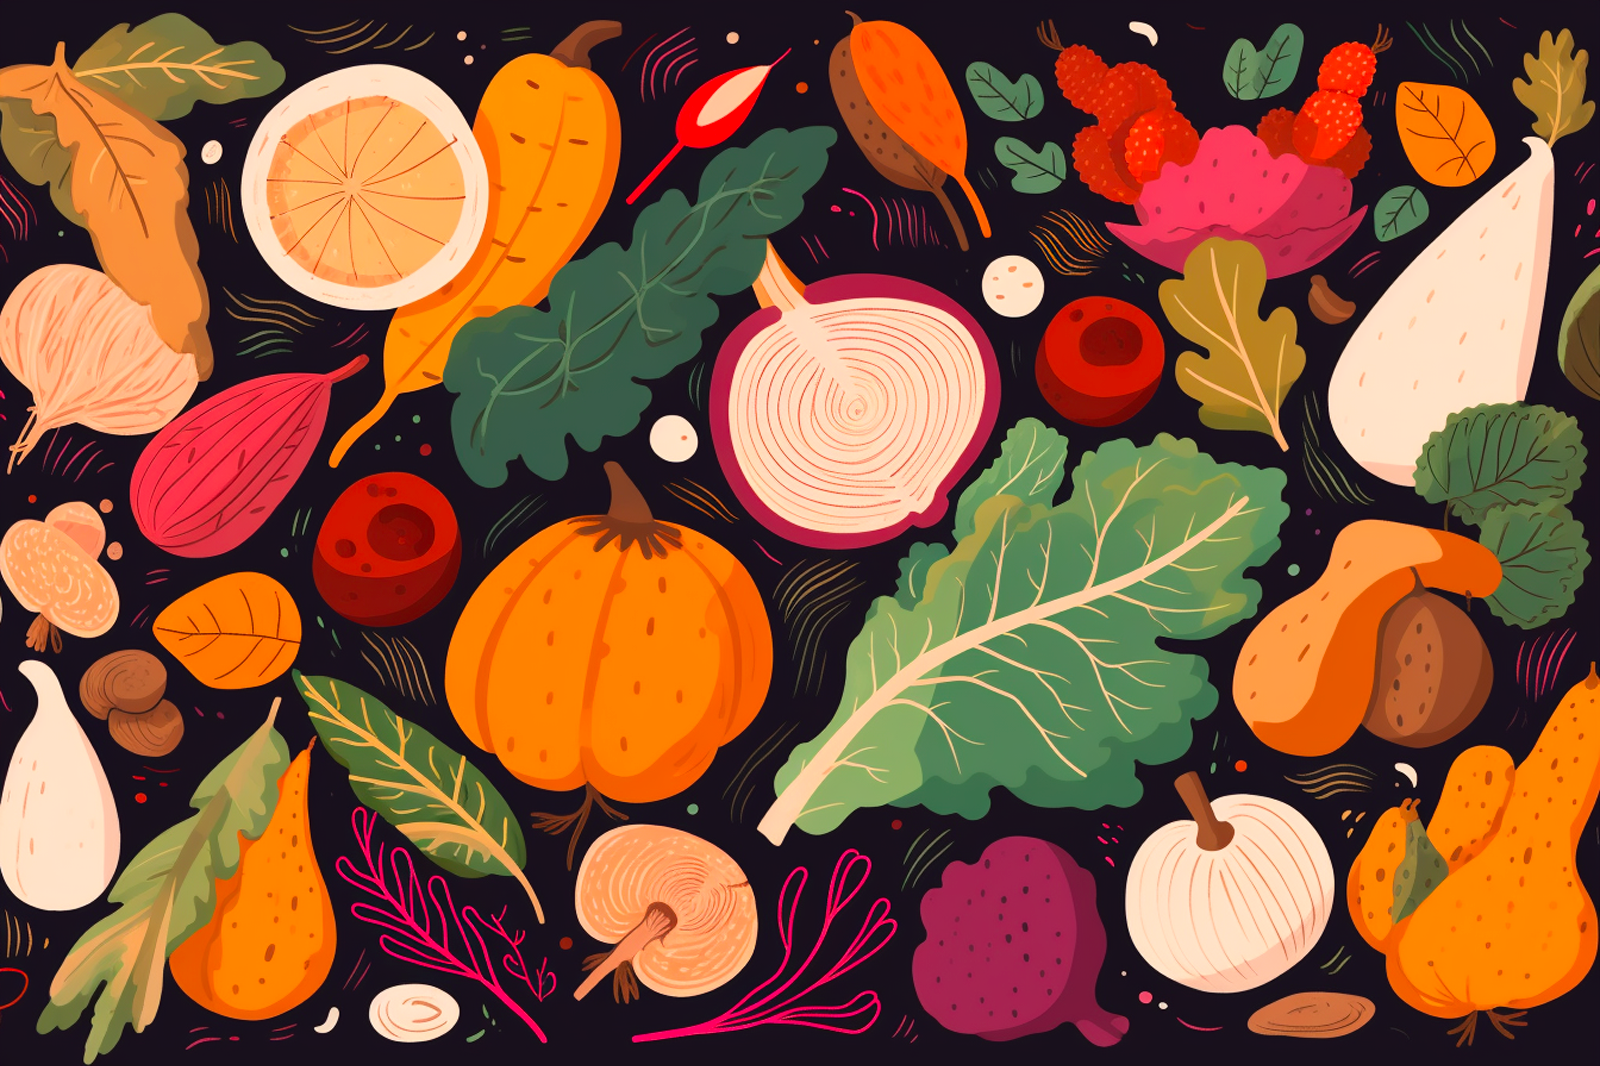 Illustration of assorted vegetables